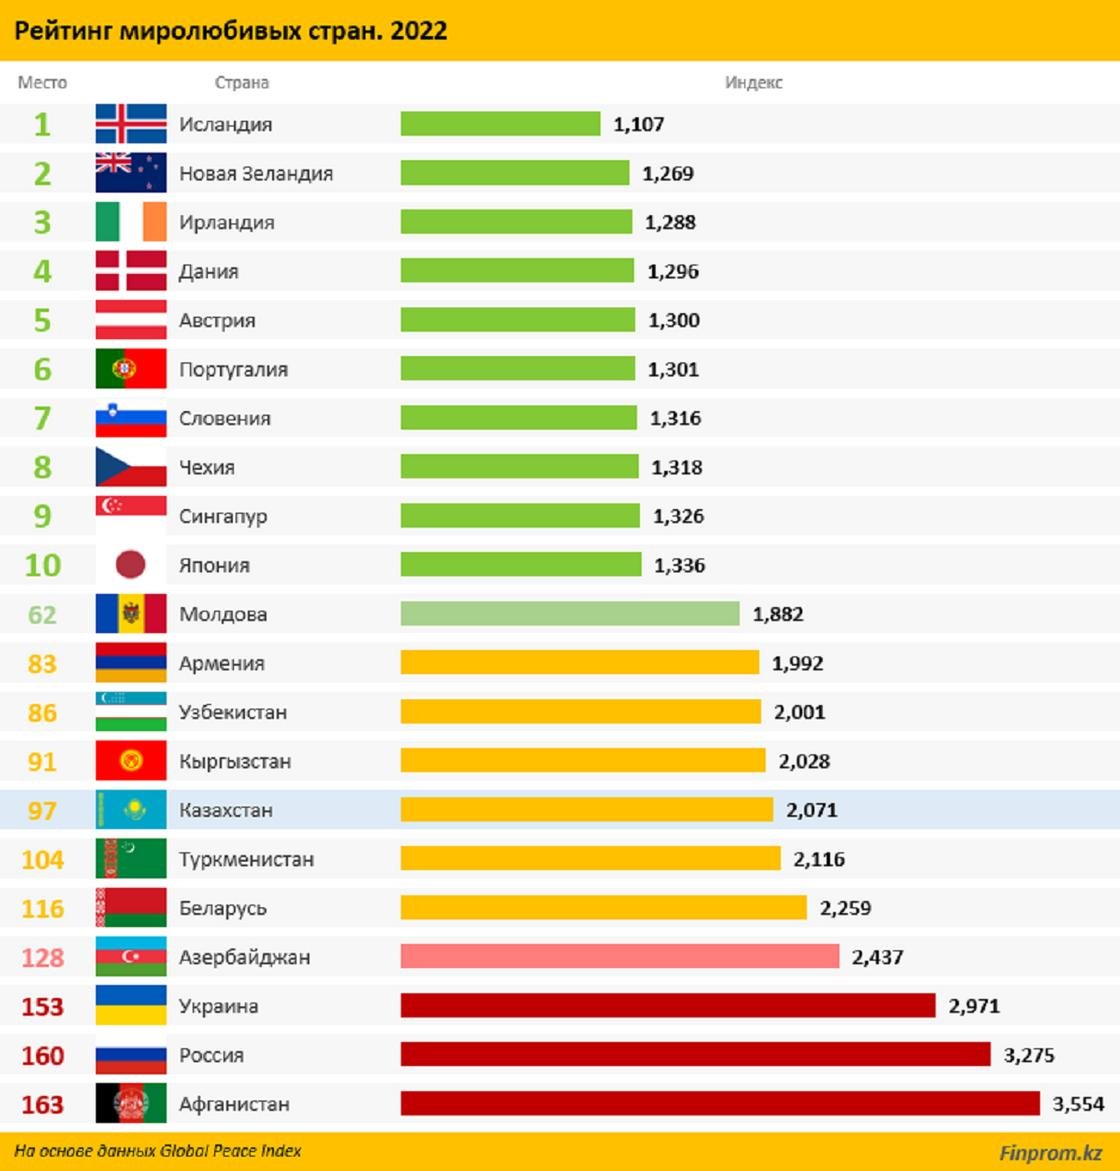 Мировые рейтинги стран. Топ стран. Самые популярные страны. Список стран по дейтинг. Экономика стран 2022